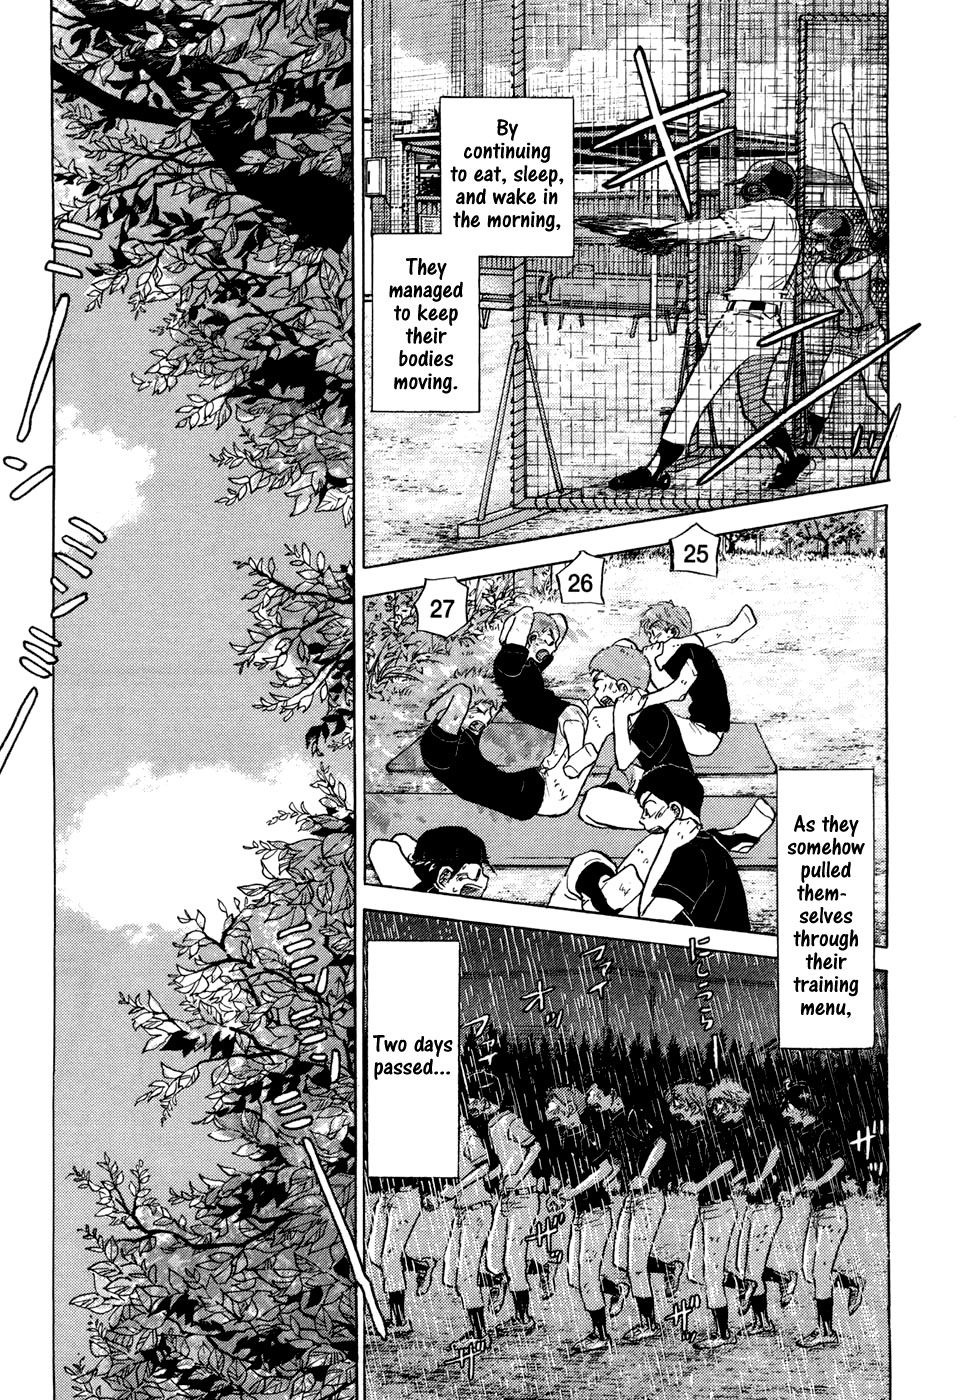 Ookiku Furikabutte - 028b page p_00040